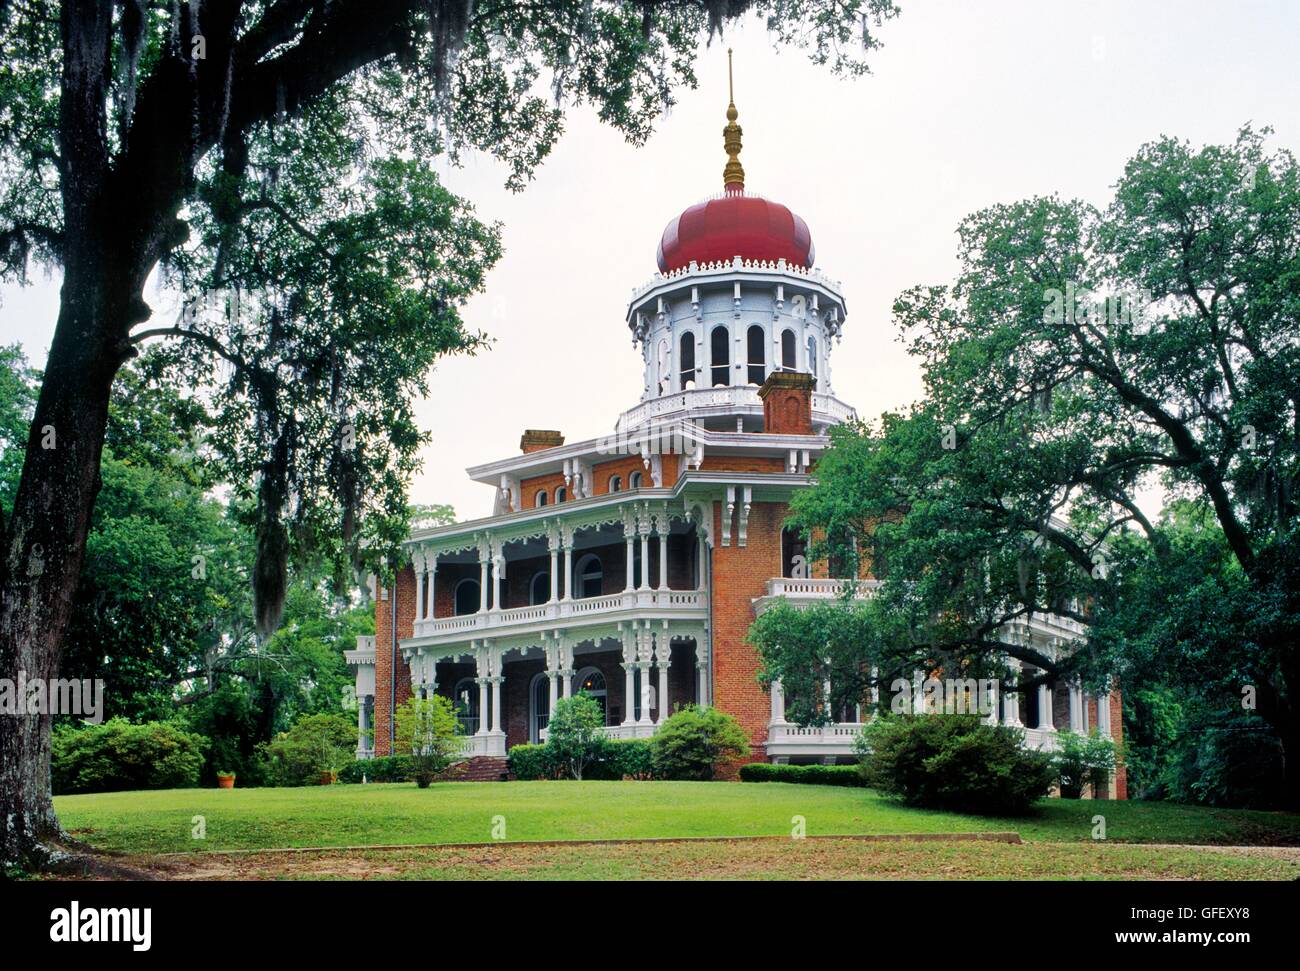 Les états du sud. longwood plantation house mansion à Natchez, Mississippi, usa Banque D'Images